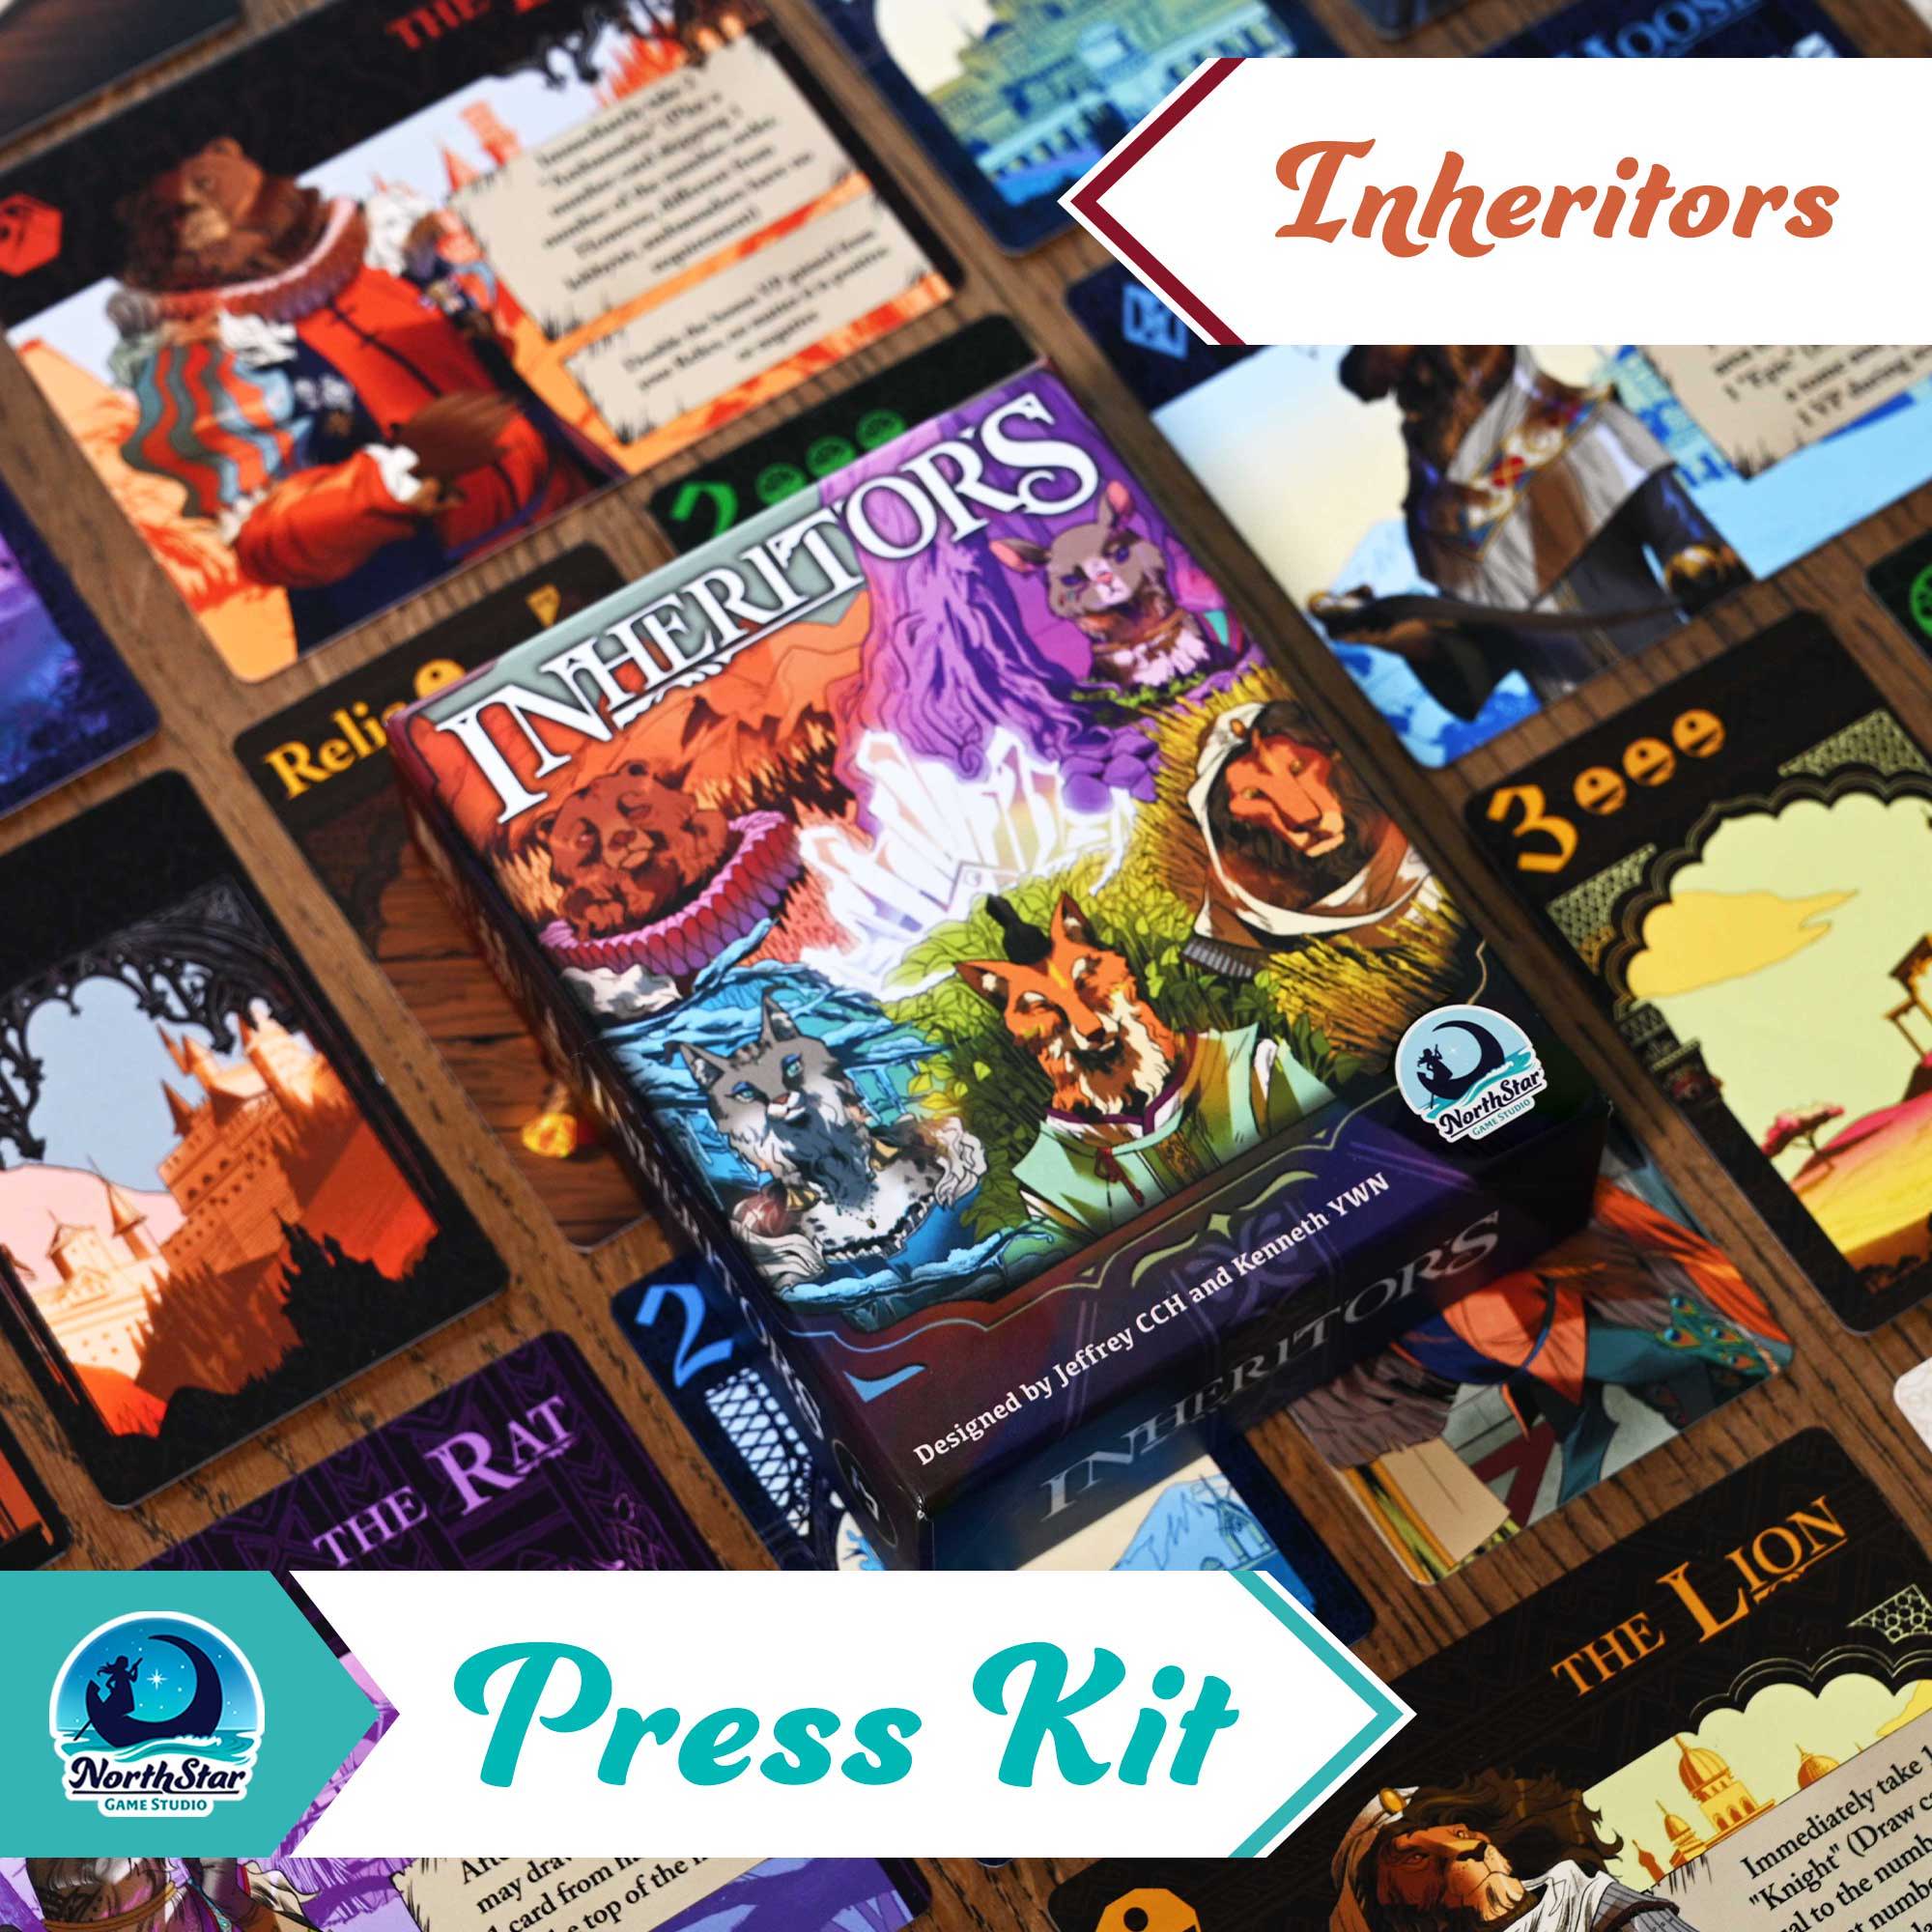 Inheritors Press Kit